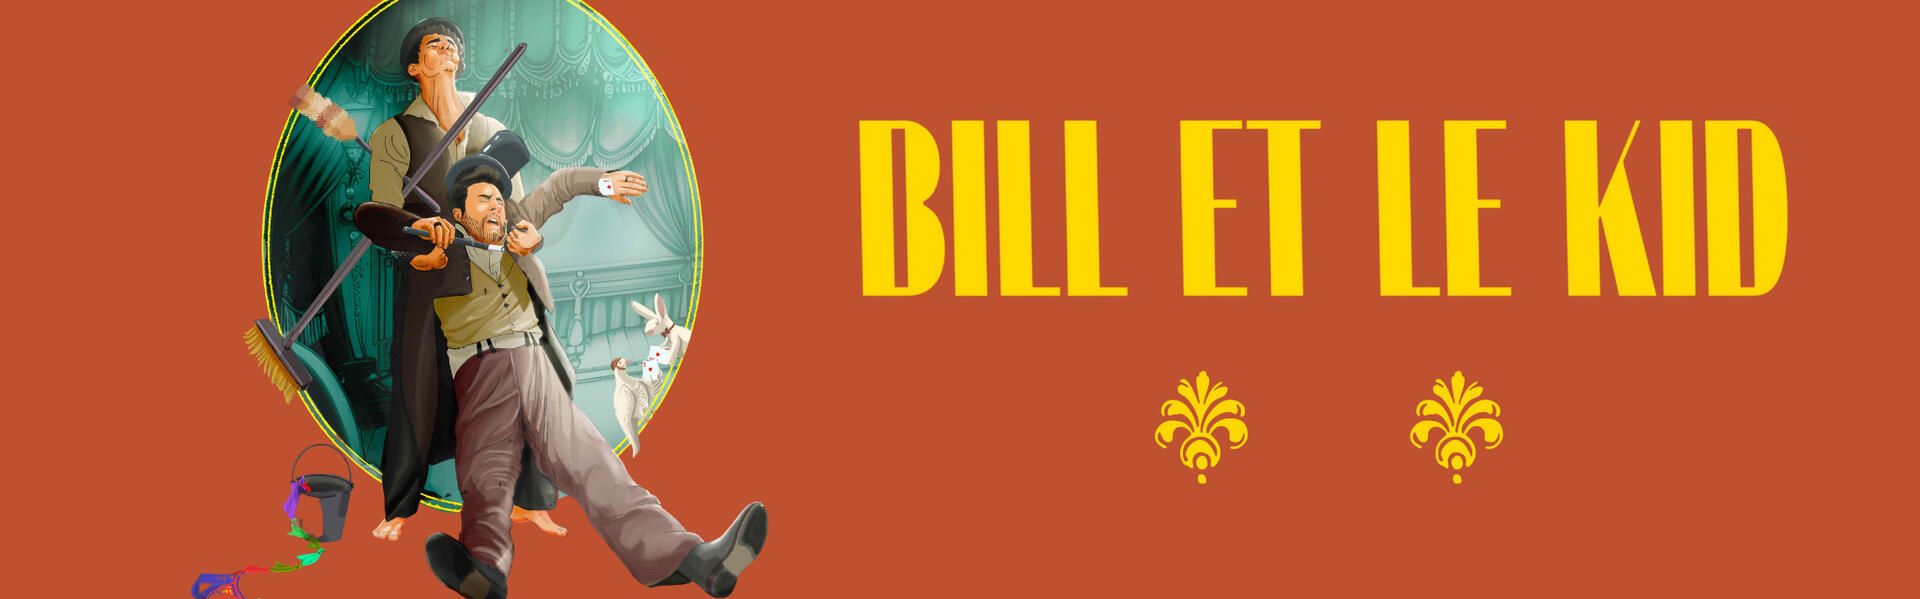 Bill et le Kid